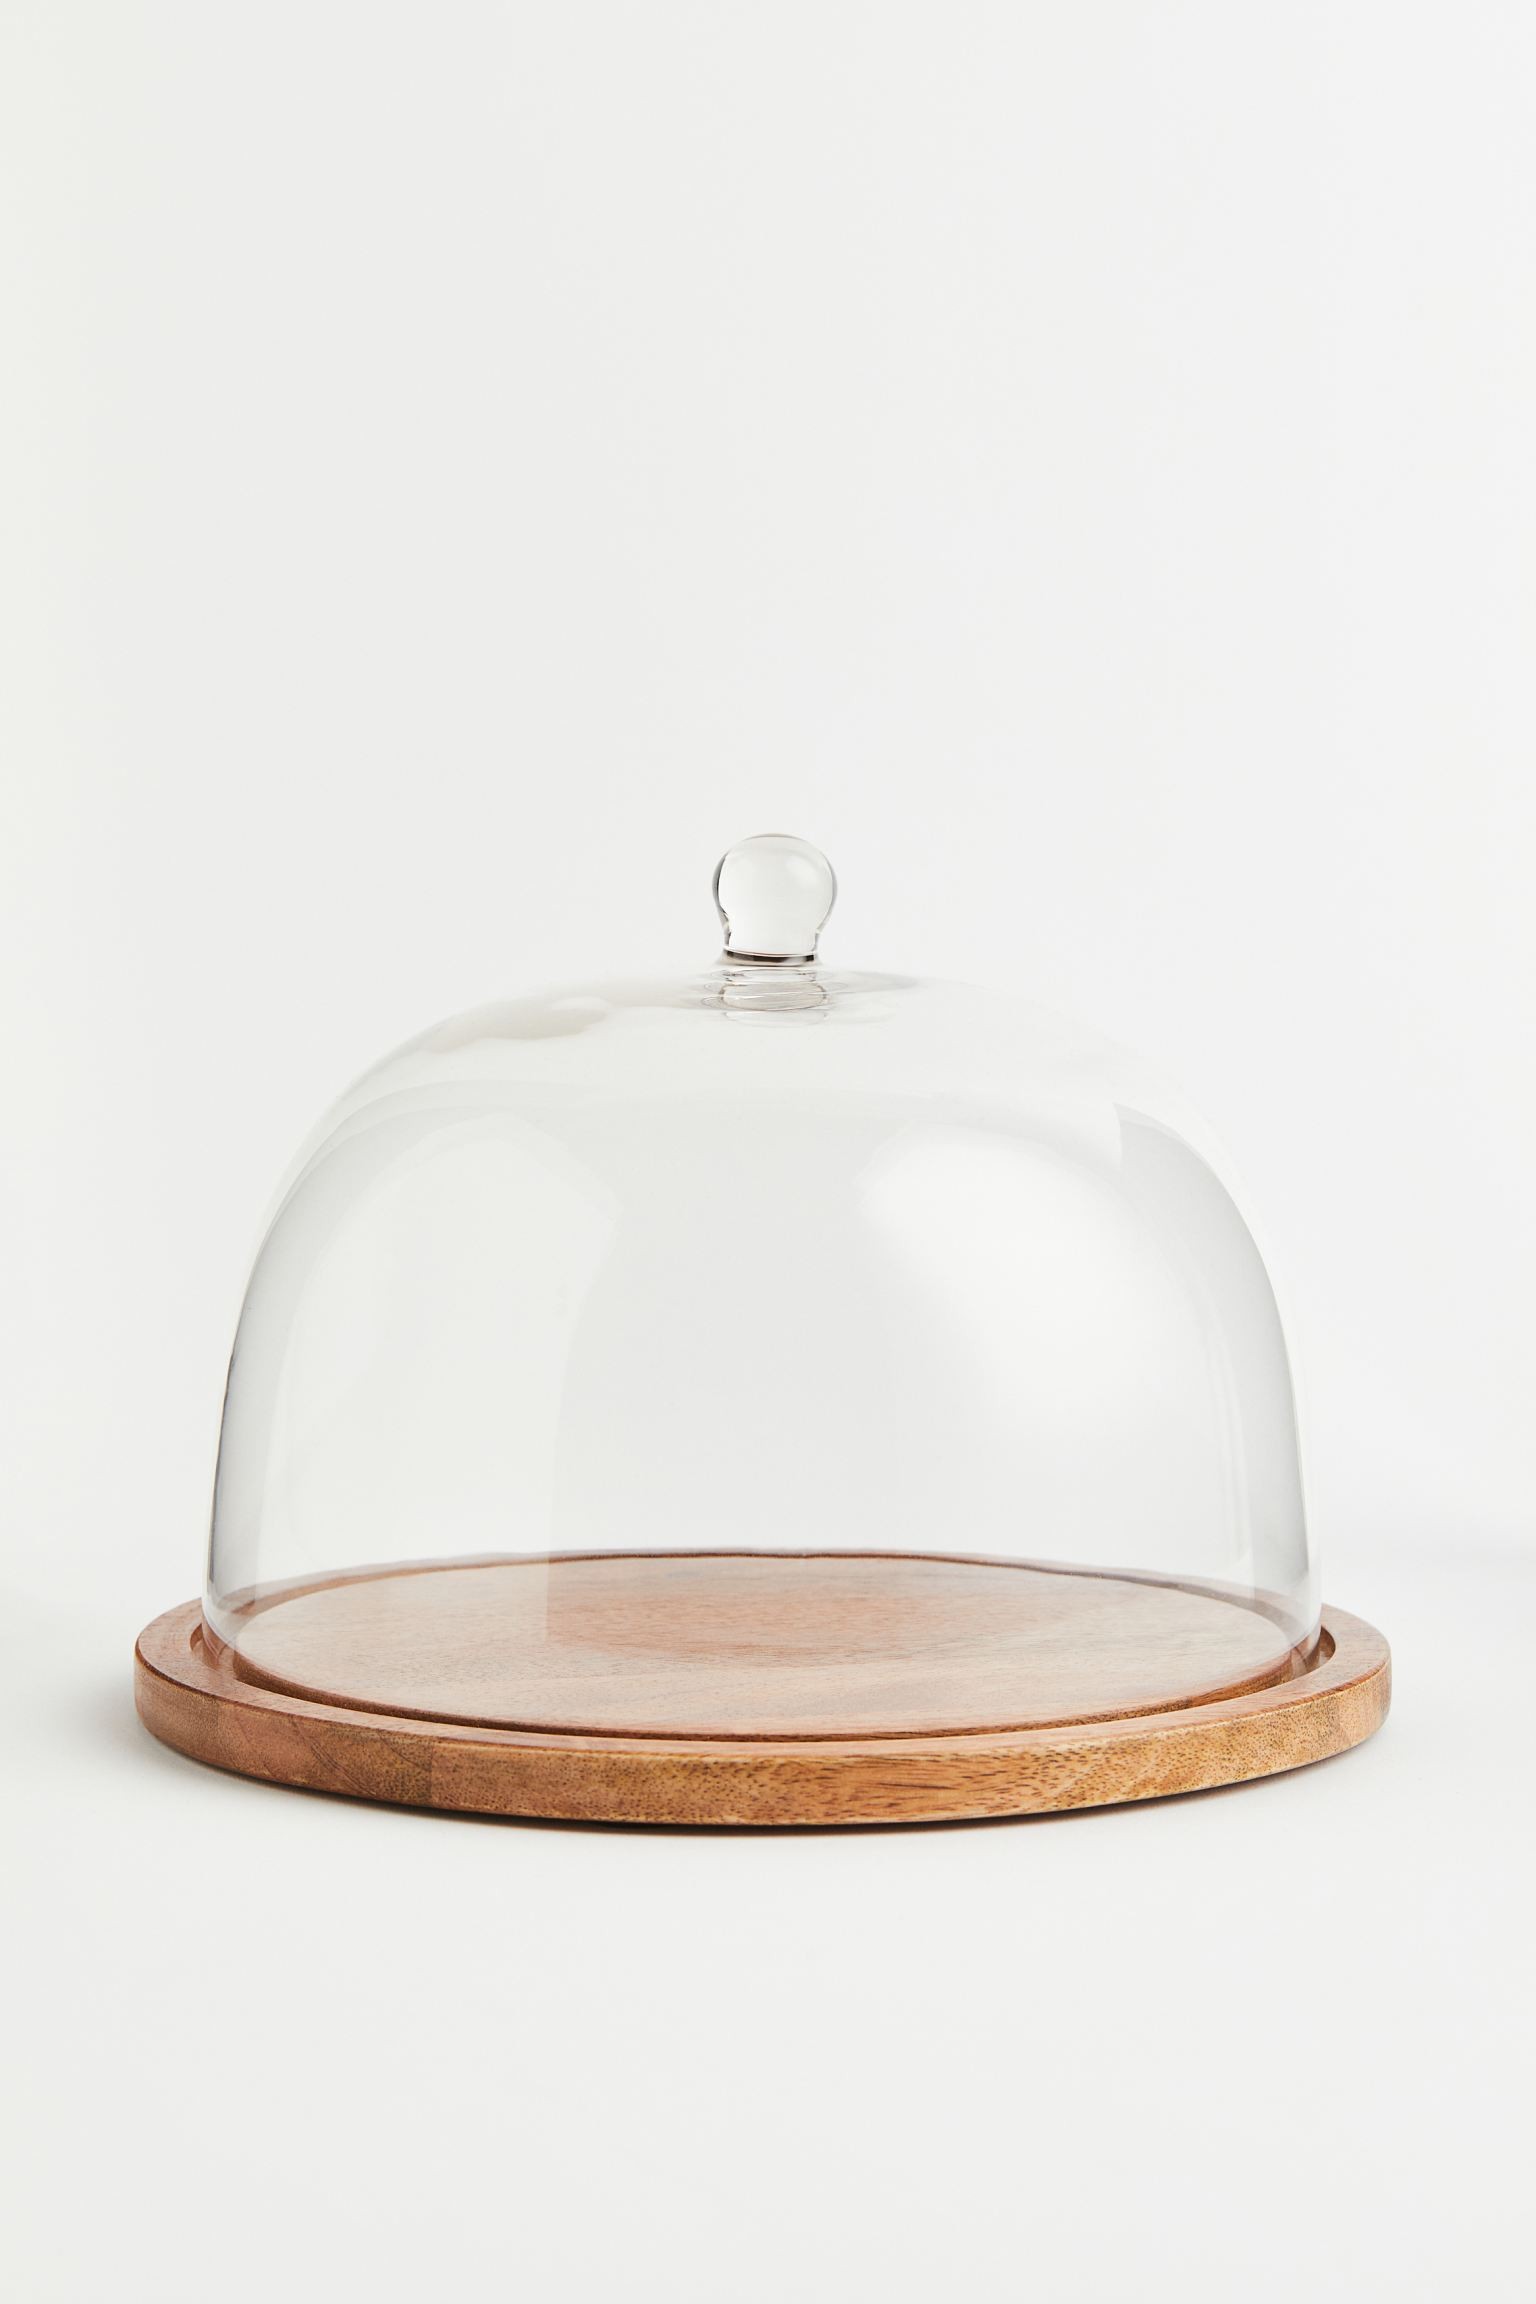 H&M Home Таця зі скляним куполом, Прозоре скло/світло-коричневий 0868631002 0868631002